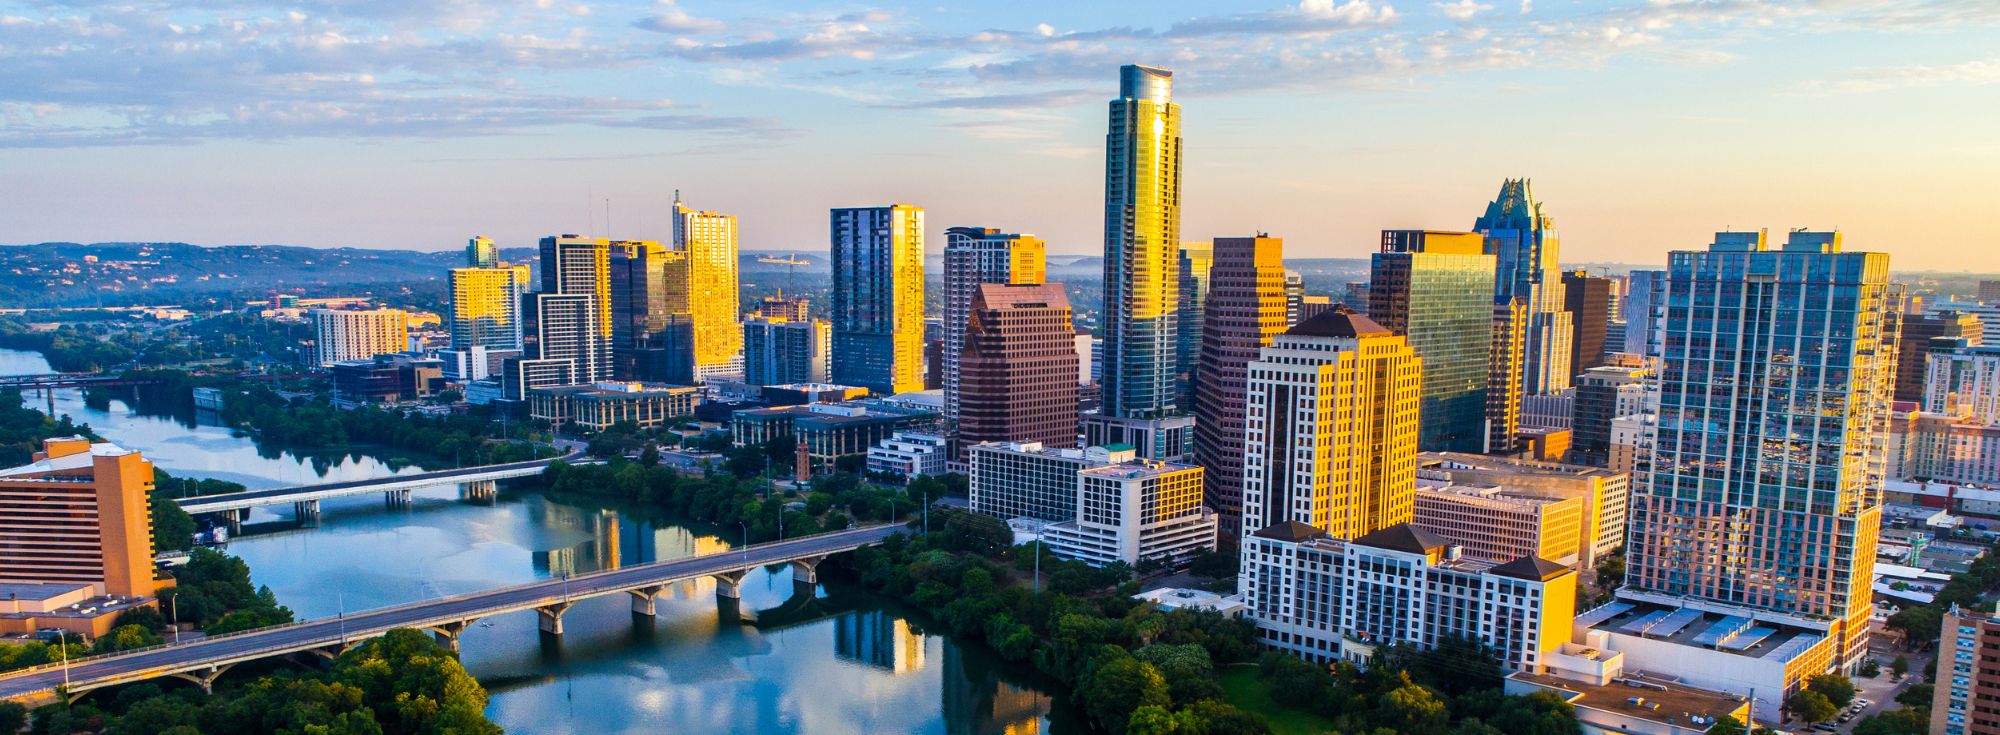 Photo of the Austin, Texas skyline